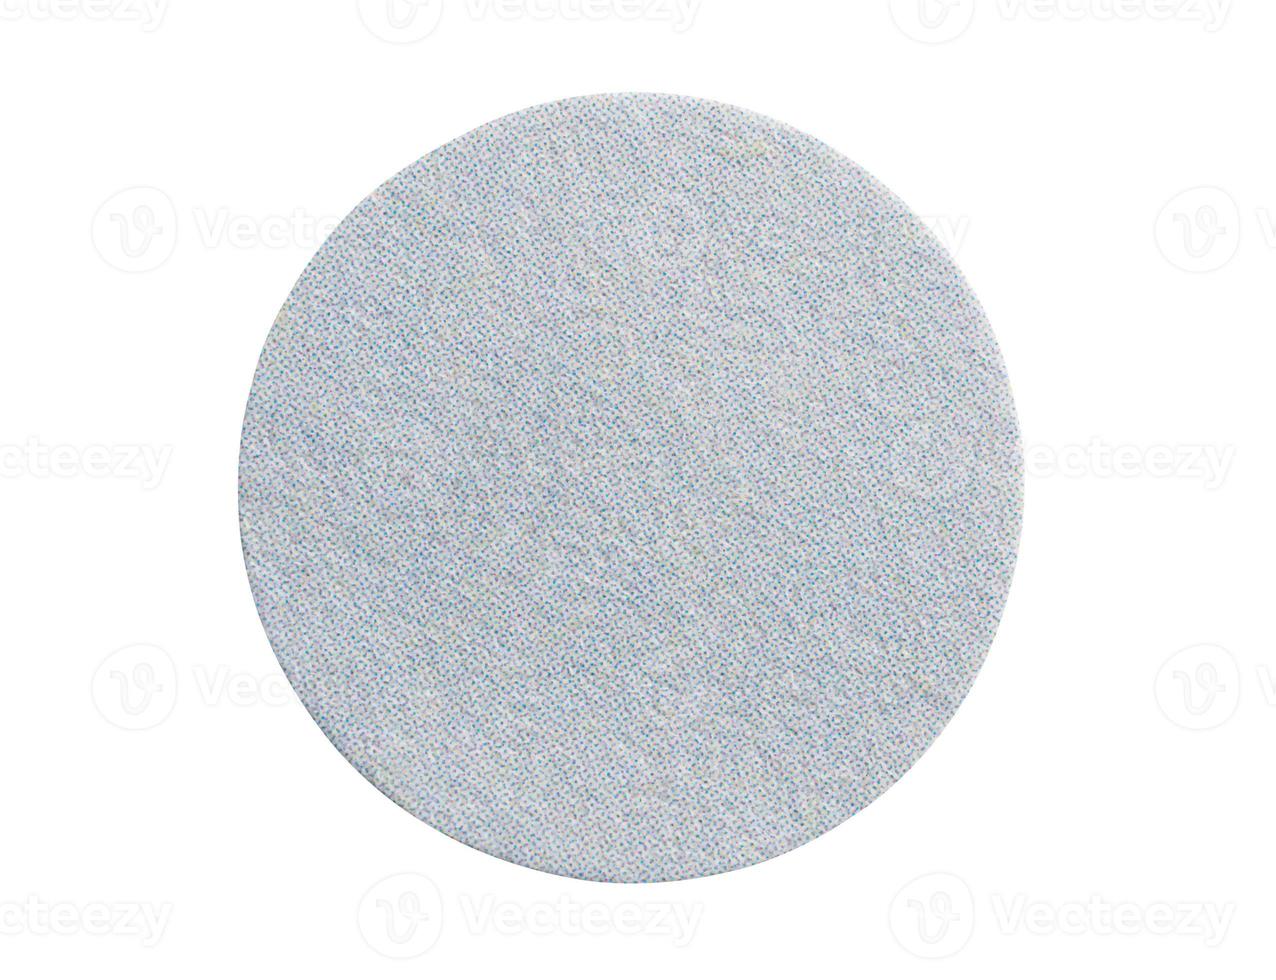 tom runda grå papper klistermärke märka isolerat på vit bakgrund foto